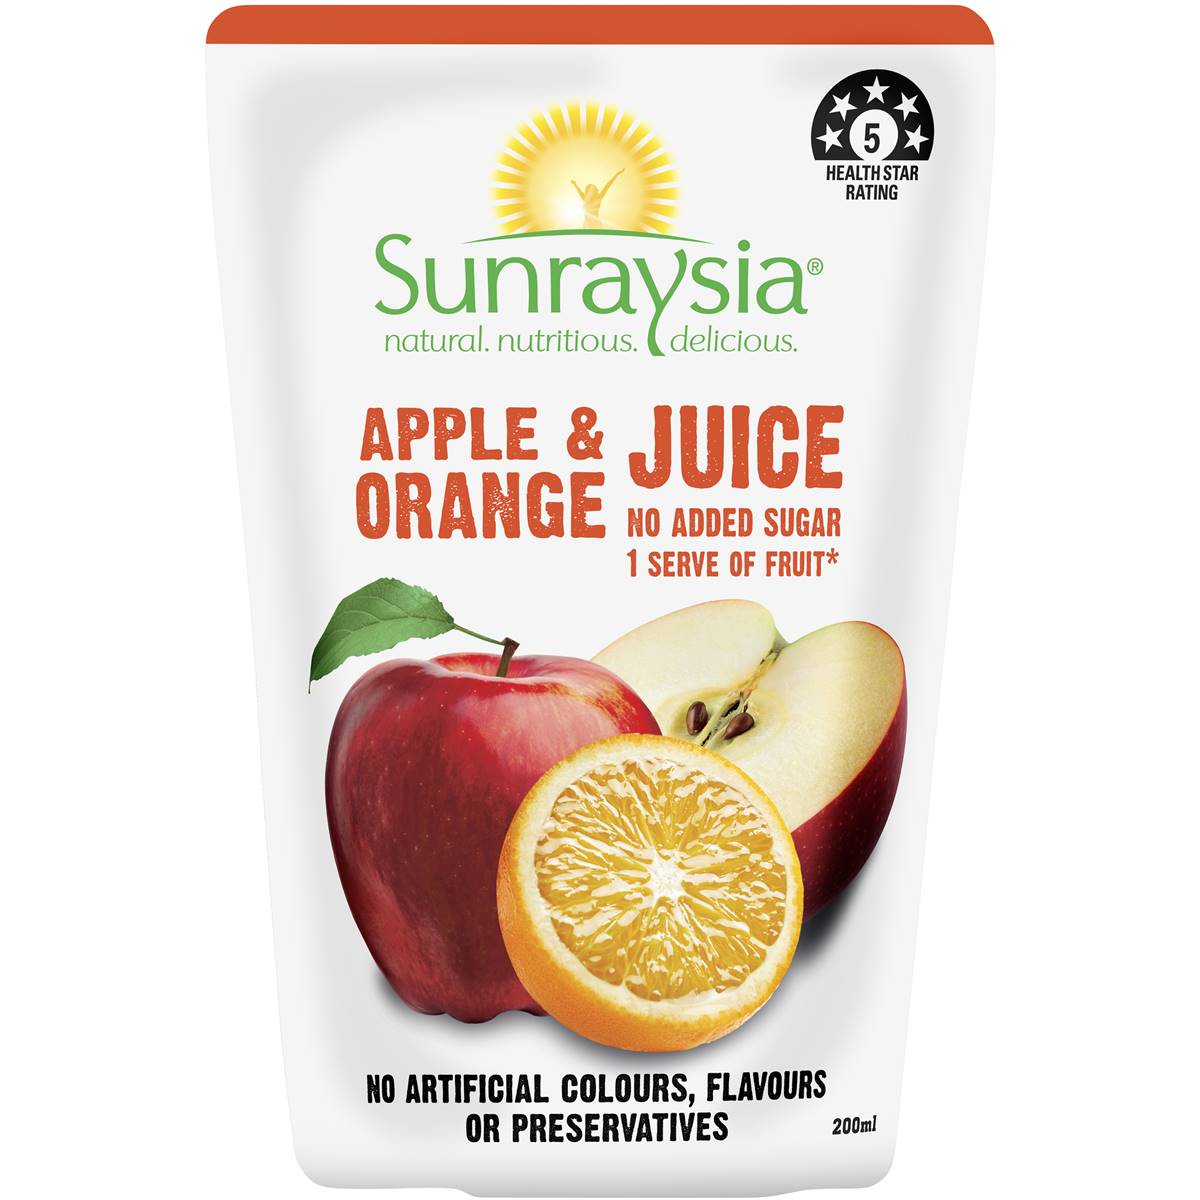 Calories in Sunraysia Apple & Orange Juice